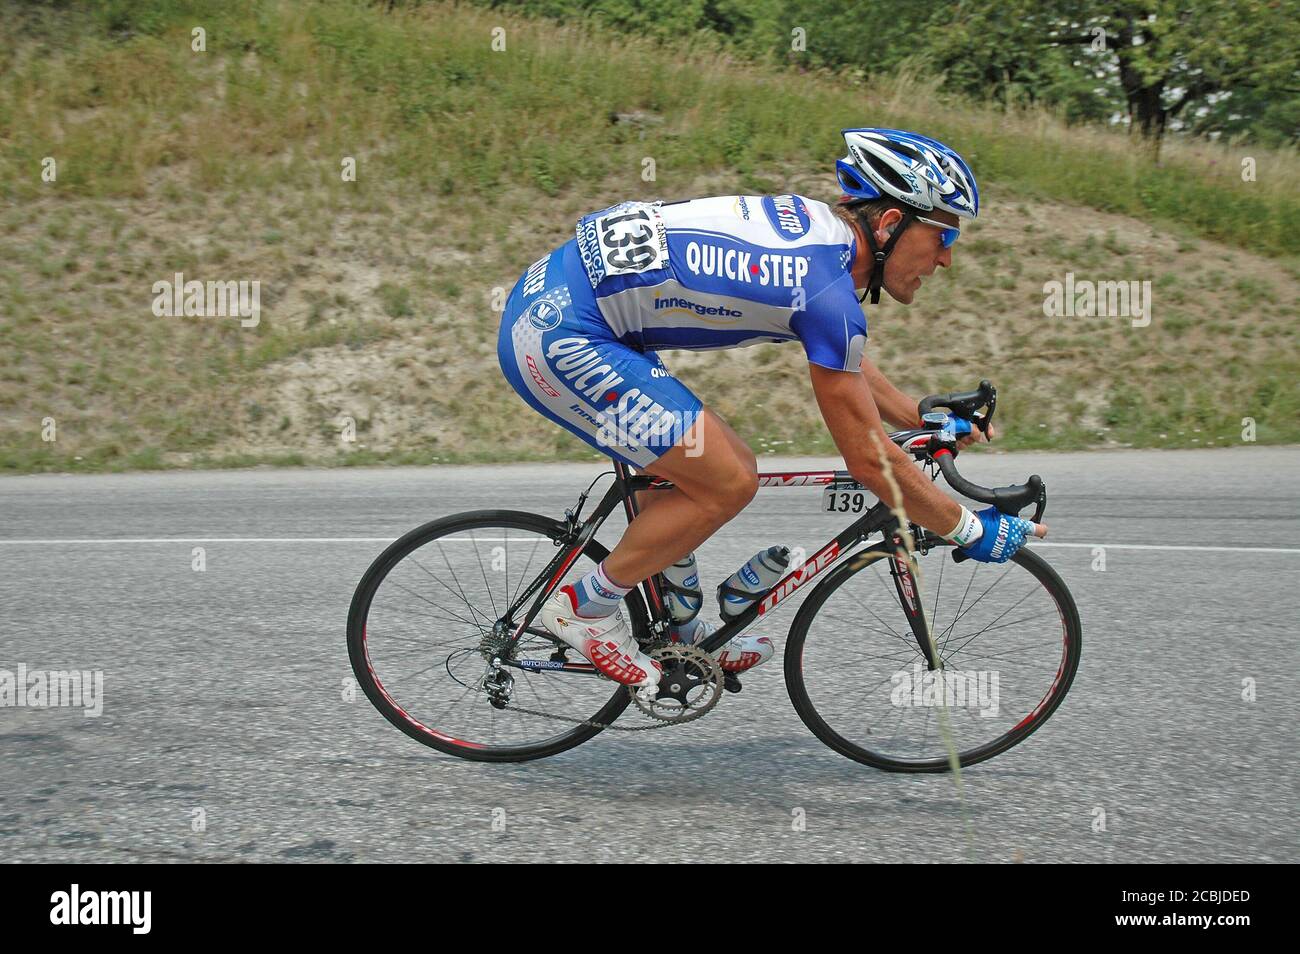 Stefano Zanini, der italienische Rennradprofi, der 2005 an der Tour de France - Etappe 11: Courchevel - Briançon teilnimmt. Stockfoto